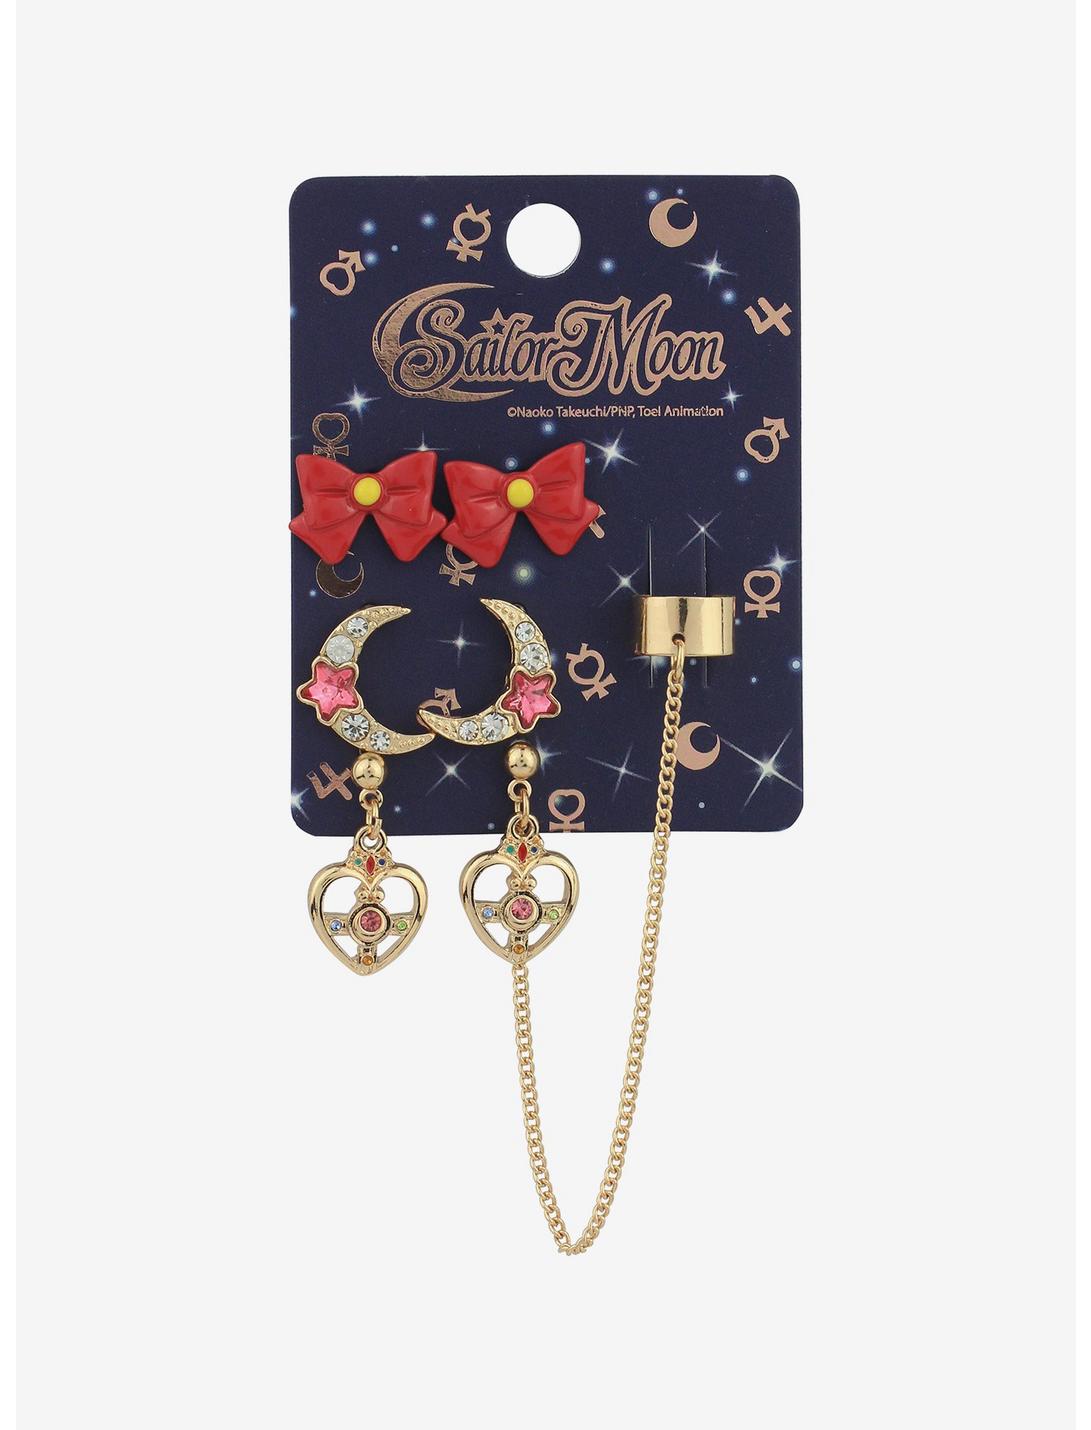 Pretty Guardian Sailor Moon Symbols Stud & Cuff Earring Set, , hi-res